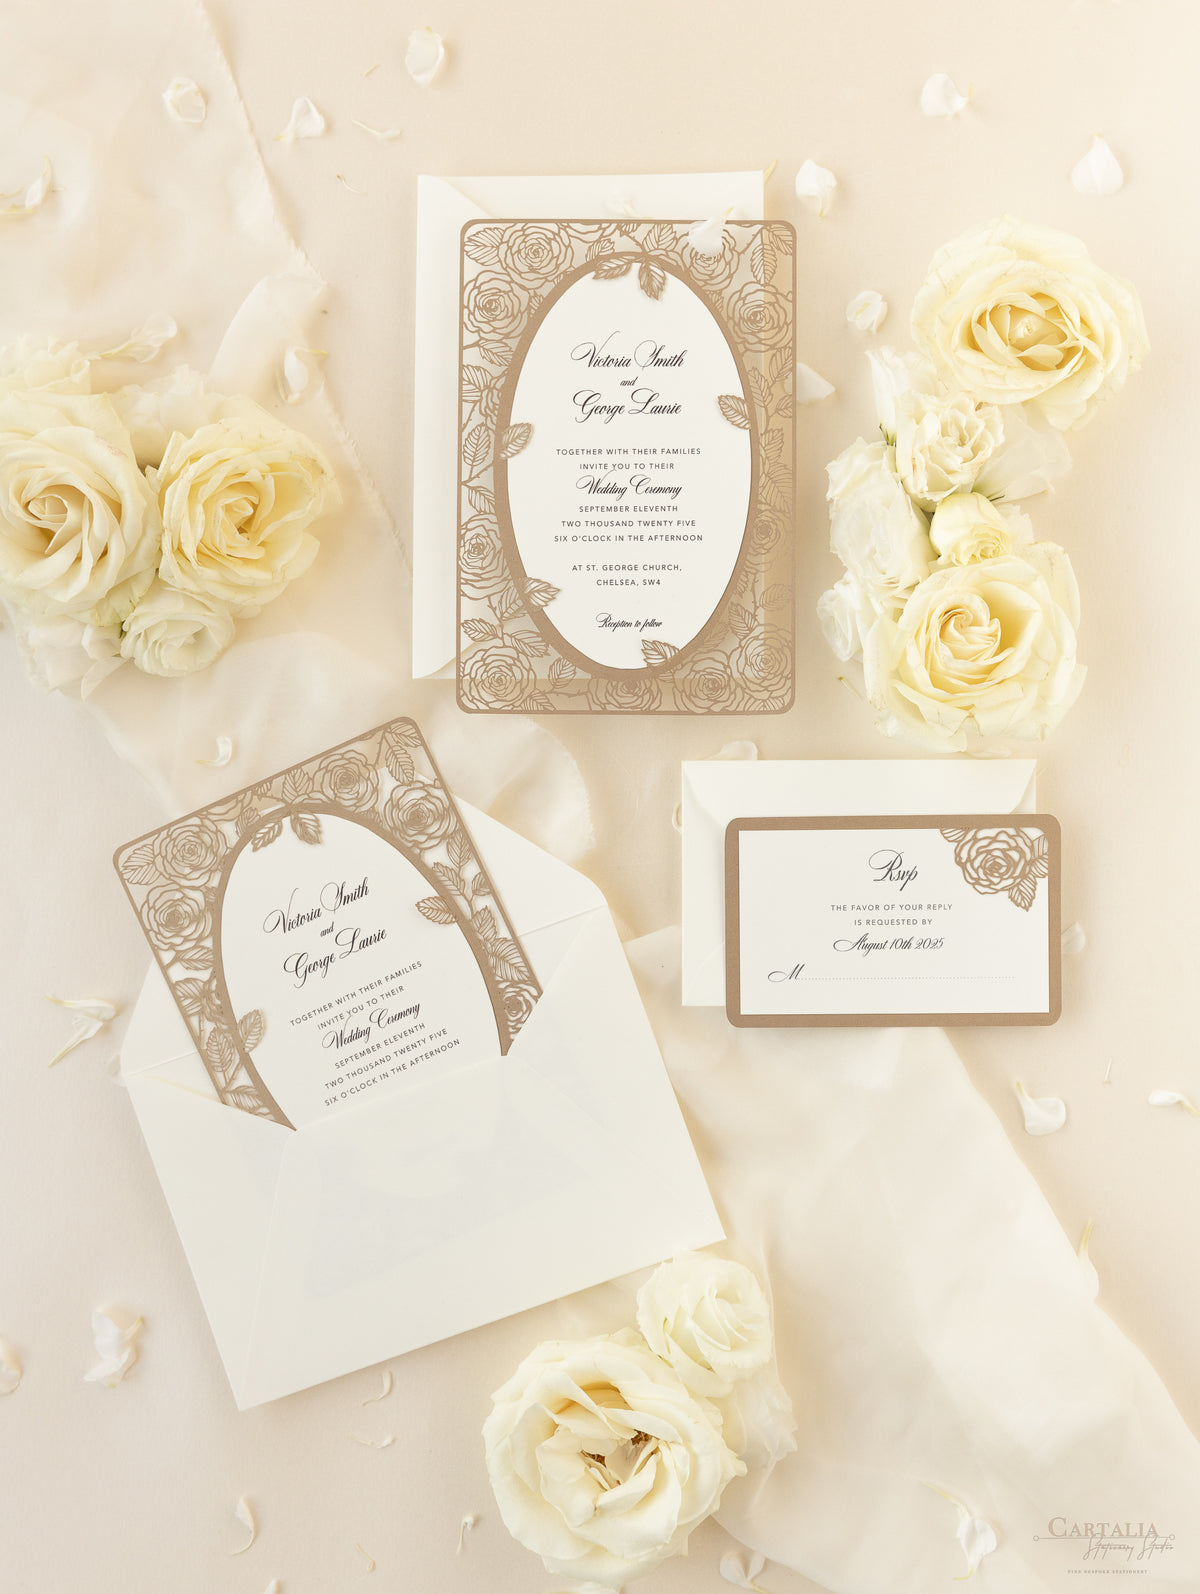 Invitación elegante para el día de la boda con rosas cortadas con láser en oro viejo